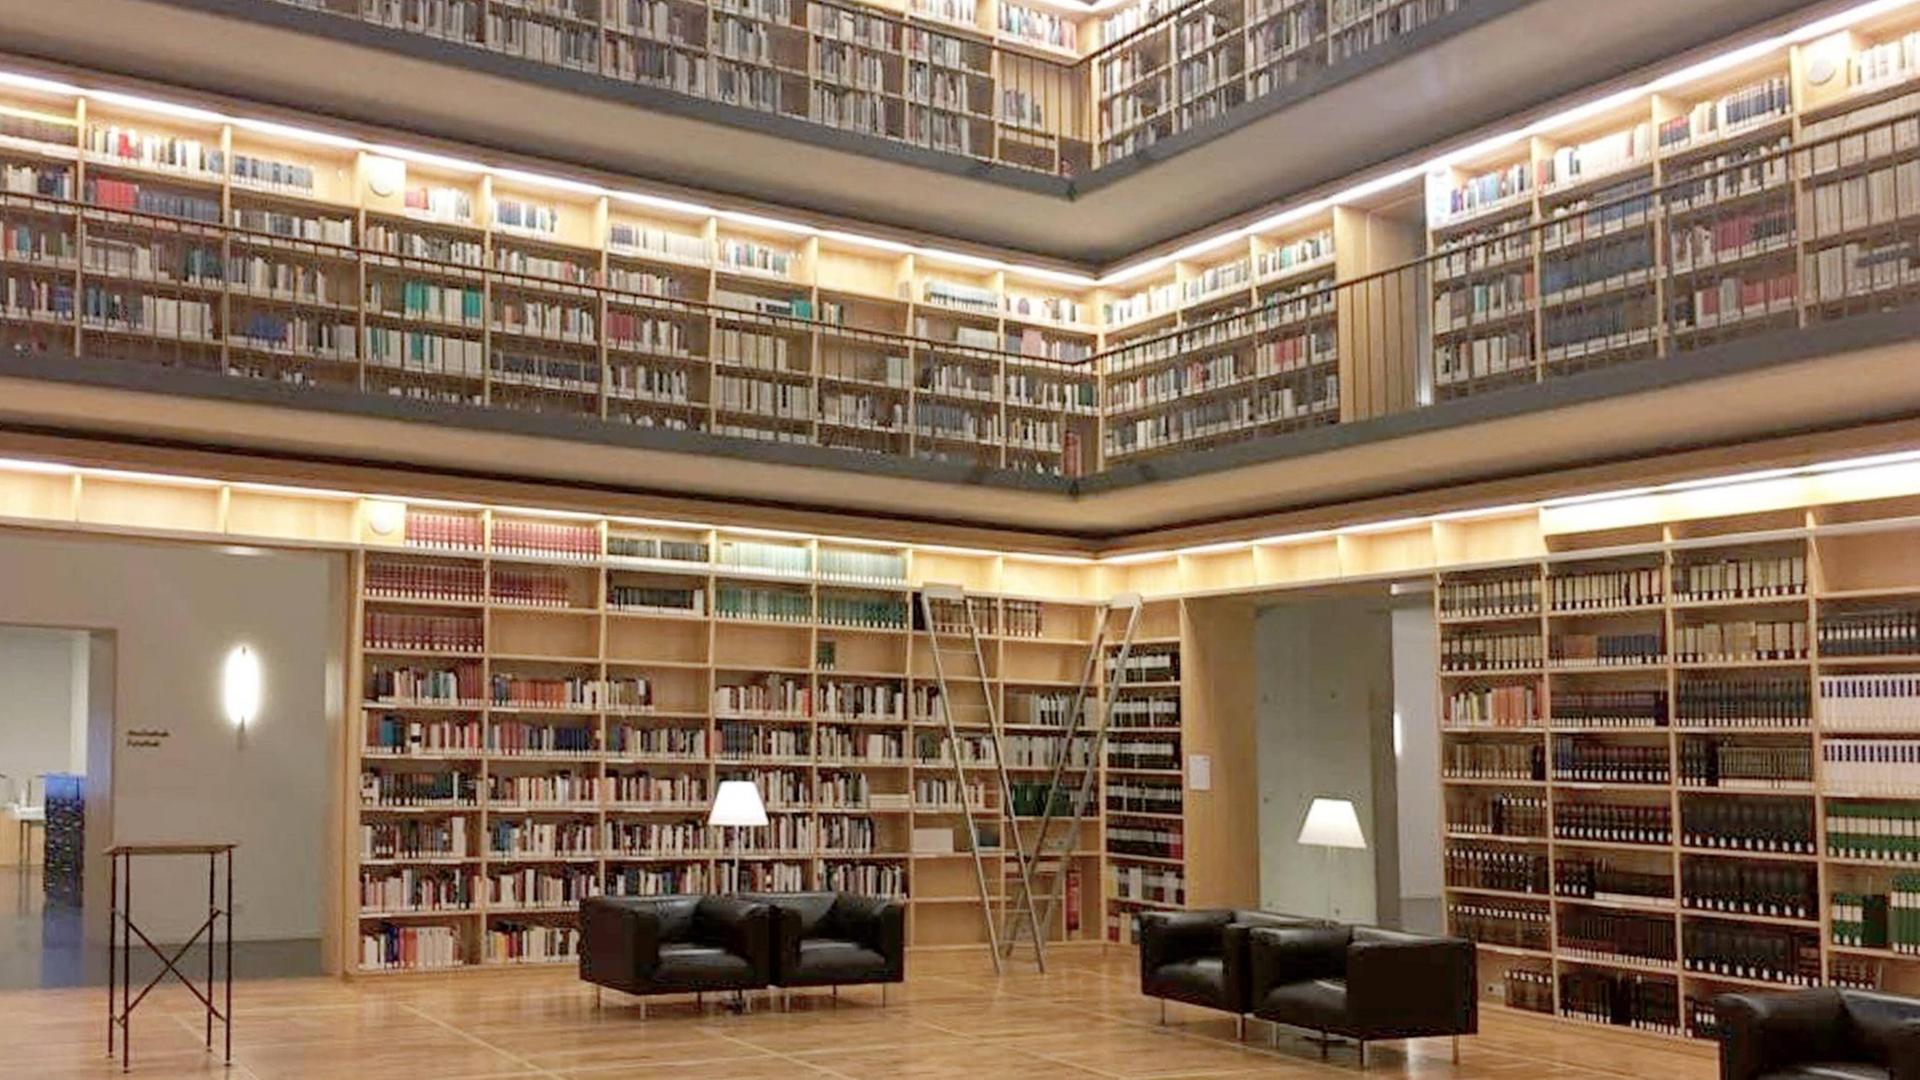 Das Bild zeigt die Stadtbücherei von Weimar - an den Wänden stehen hohe Regale über mehrere Etagen mit unzähligen Büchern.